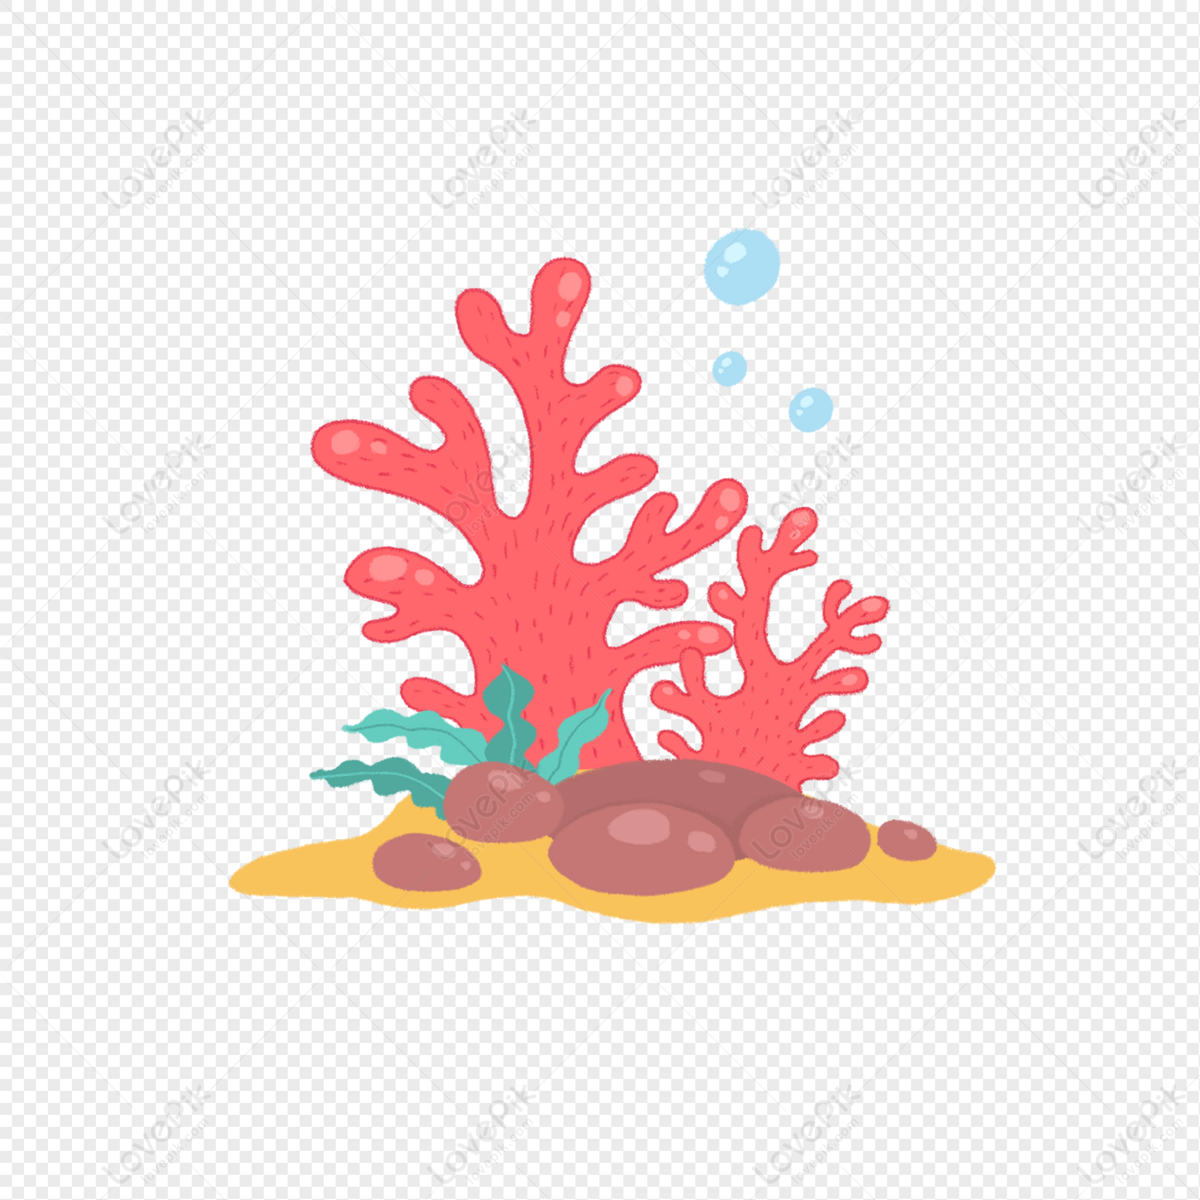 Cùng chiêm ngưỡng vẽ tay san hô đỏ PNG đầy sắc màu và sinh động, khiến bạn có cảm giác như đang bơi dưới đáy biển. Hãy thưởng thức hình ảnh này để trải nghiệm một cảm giác tuyệt vời!